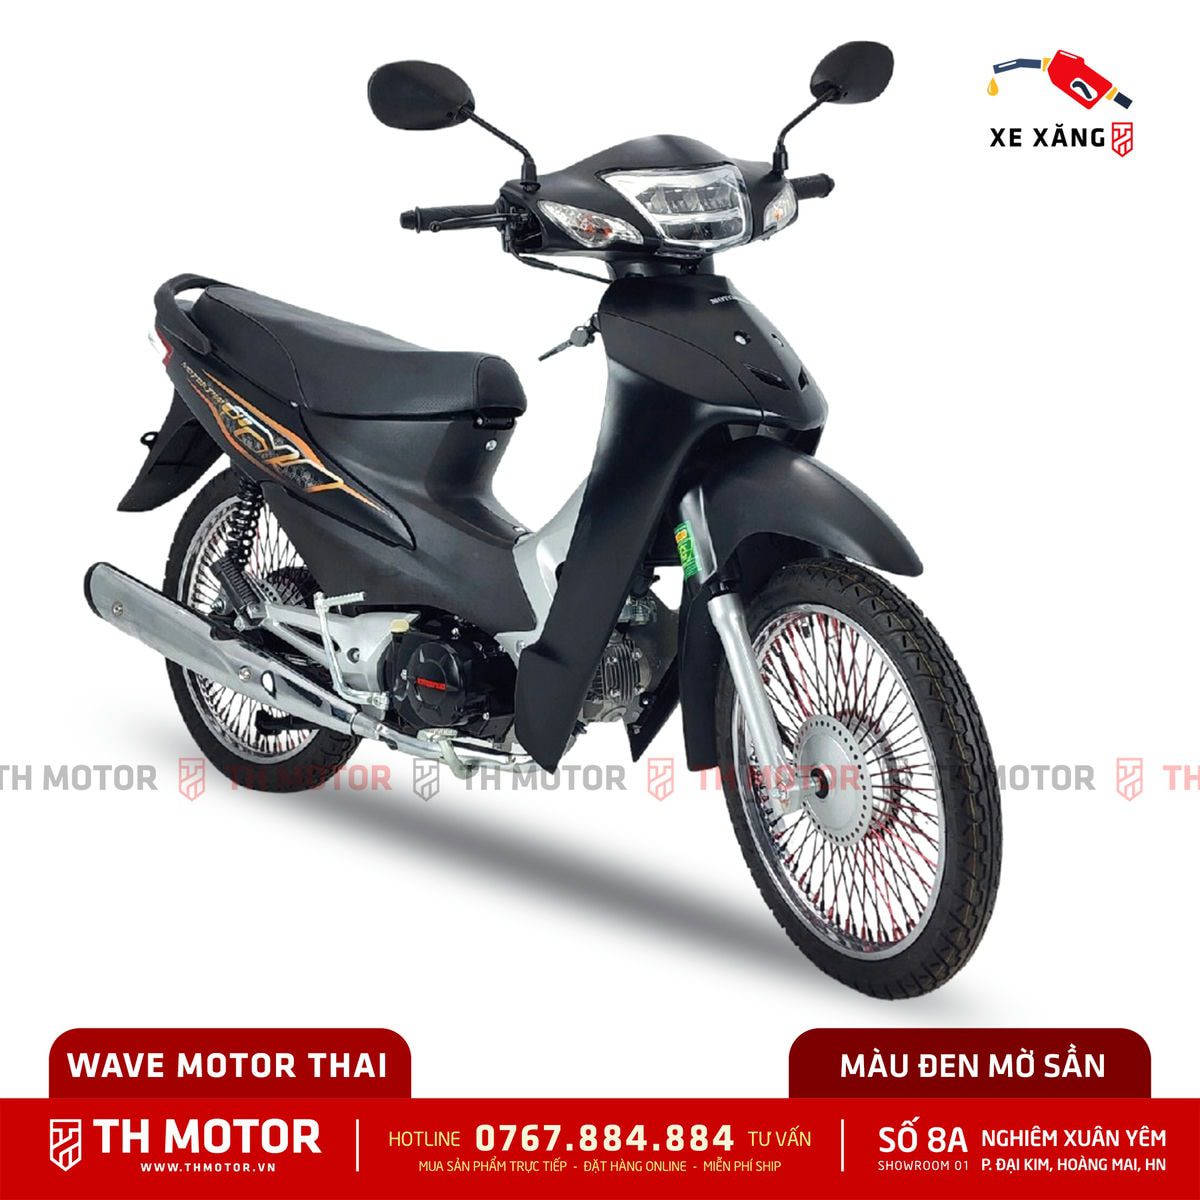 Xe máy số WAVE MOTOR THAI - TH Moto